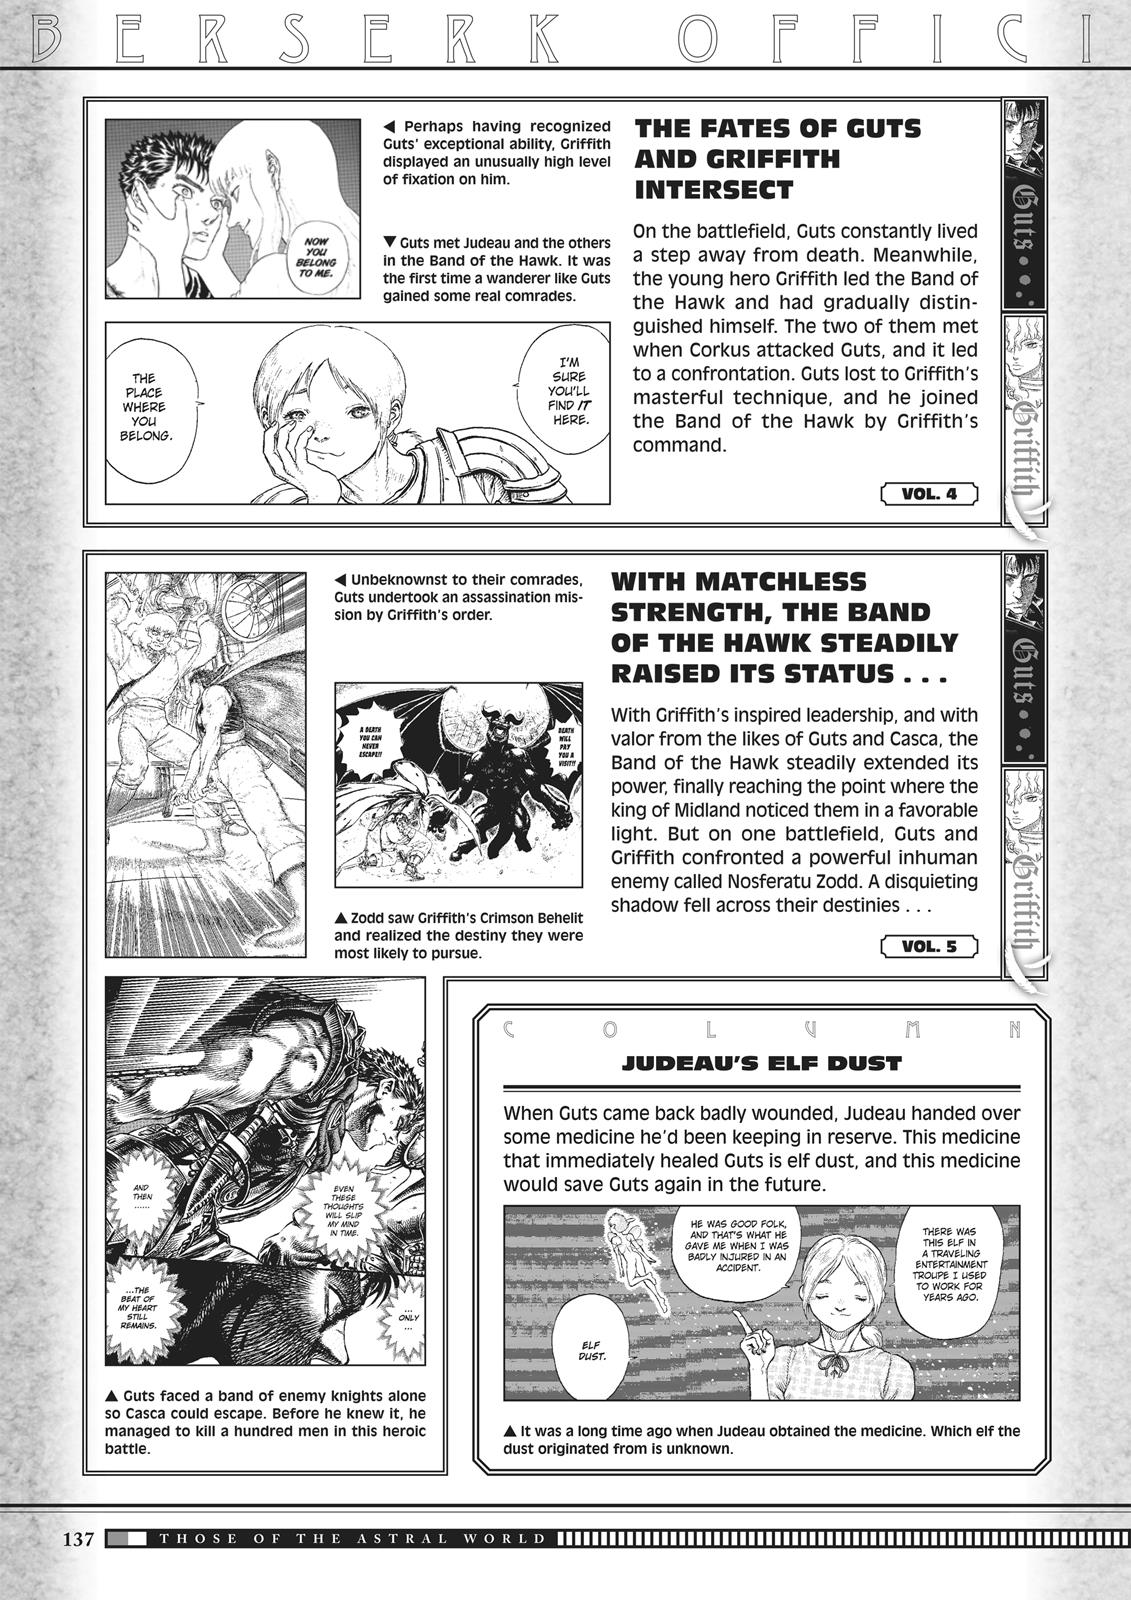 Berserk Manga Chapter 350.5 image 135